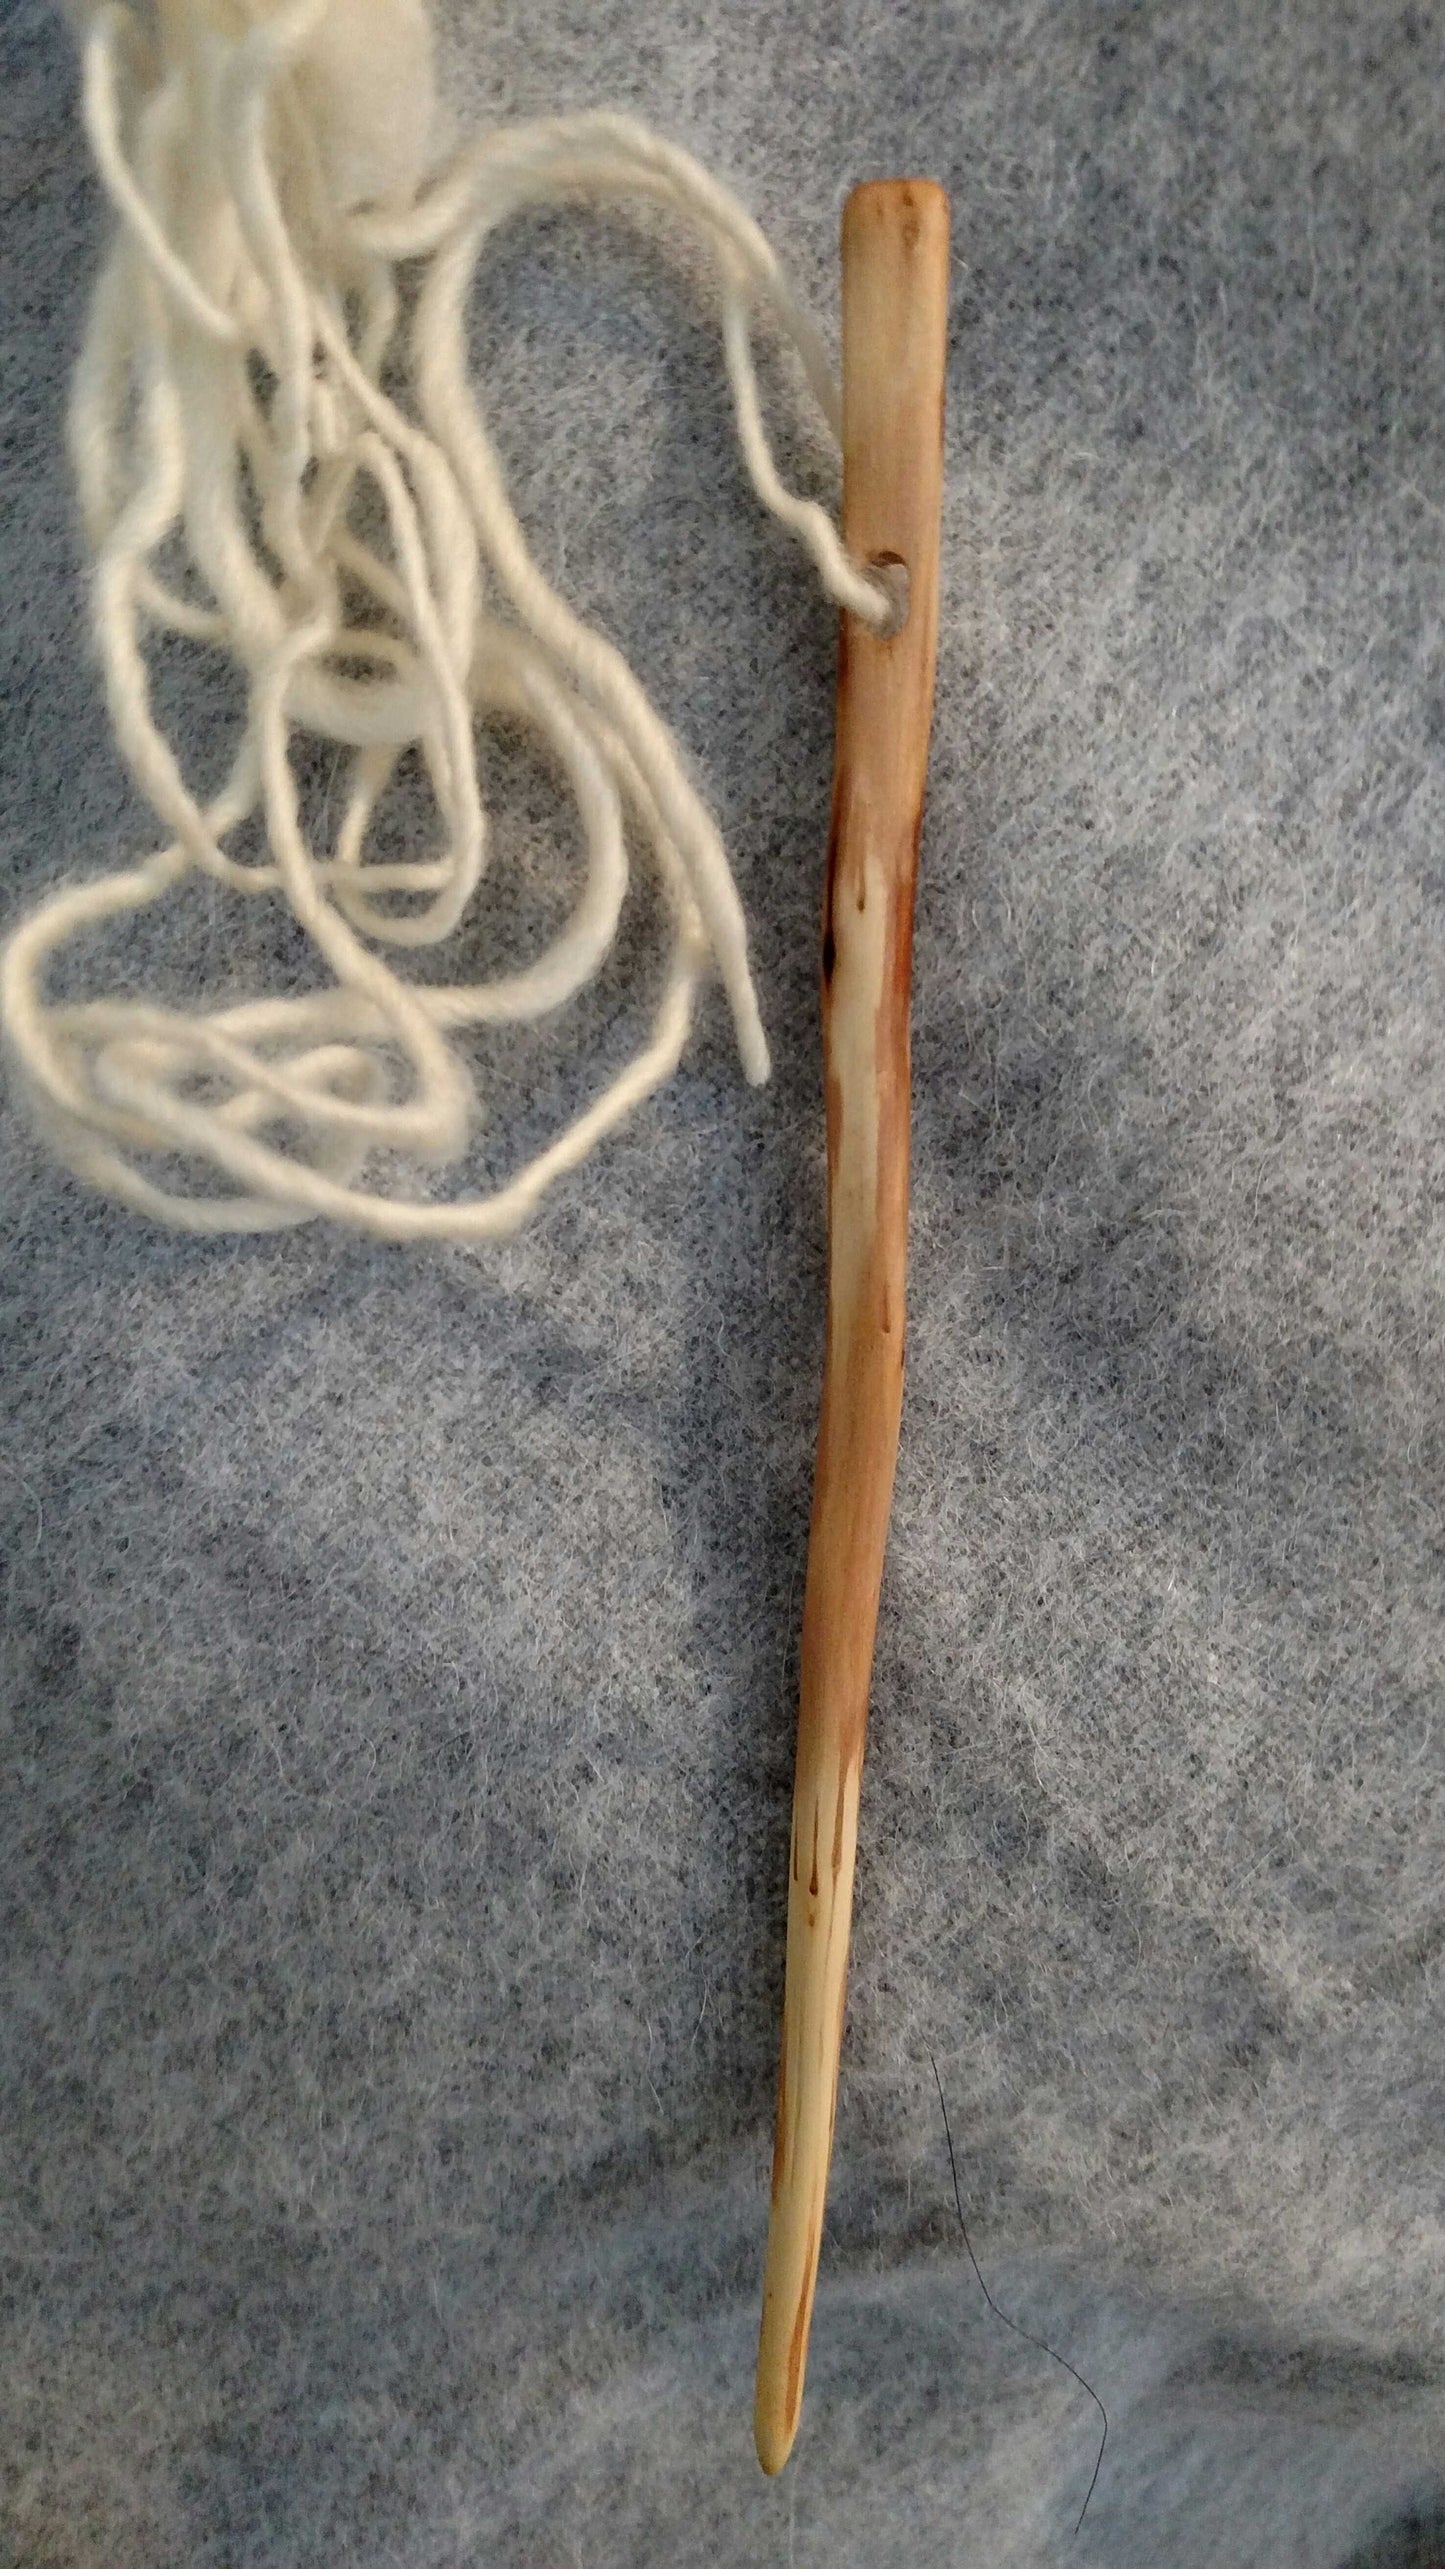 Applewood needle